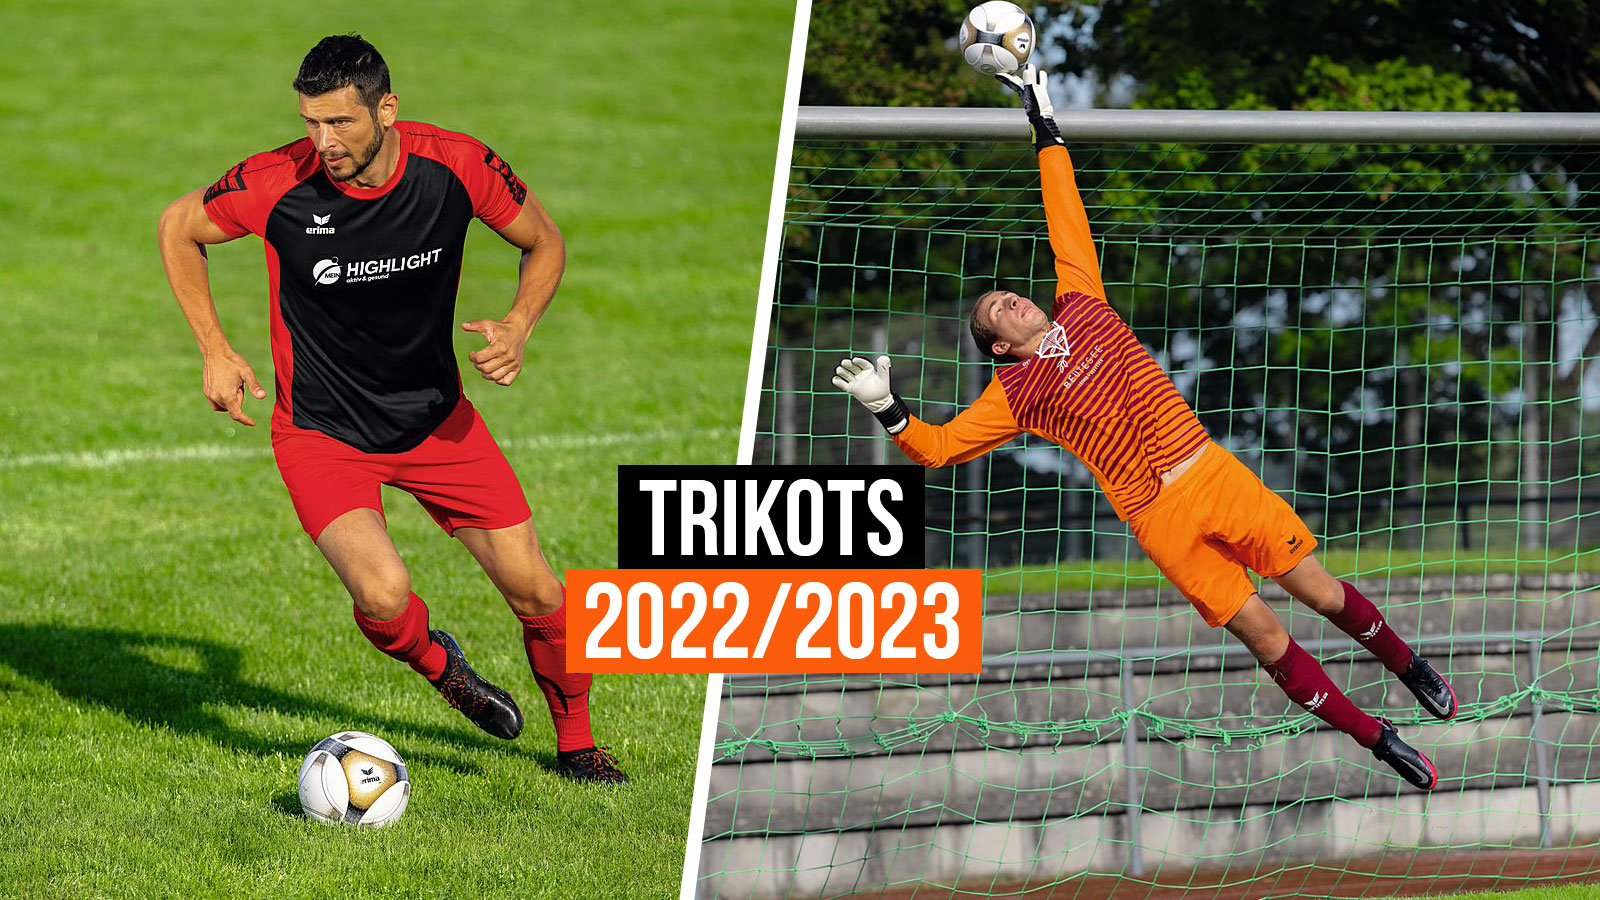 Die erima Trikots 2022/2023 für Spieler und das Erima Torwart Trikot